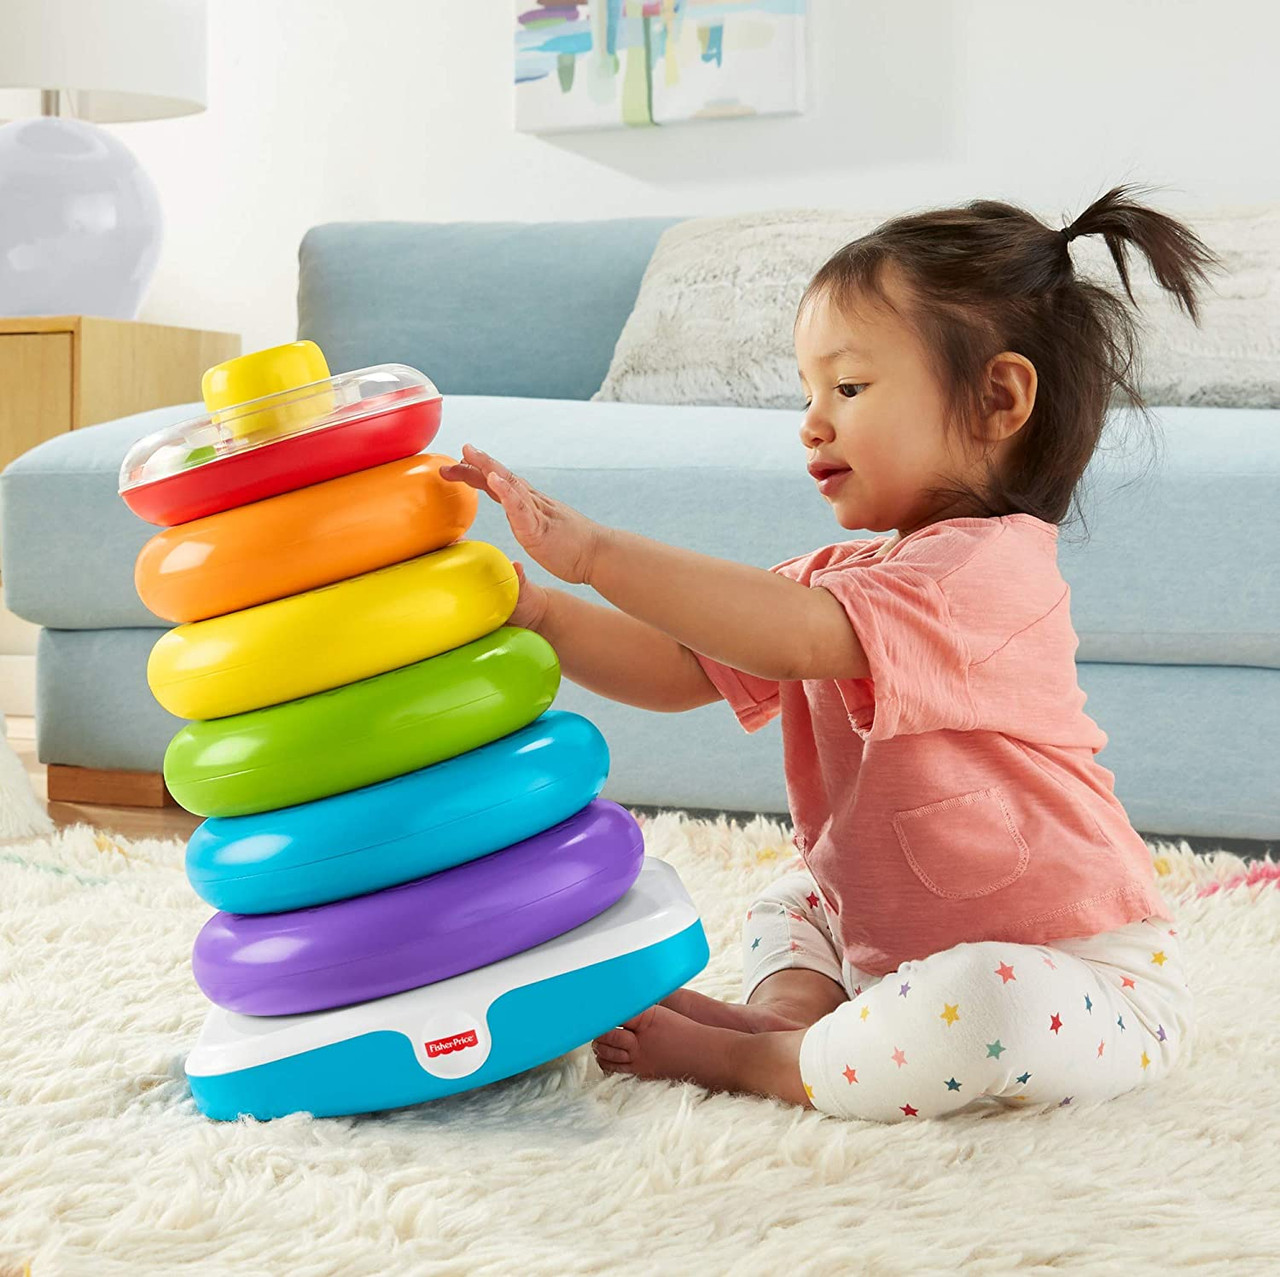 Ring stacking Montessori toy 